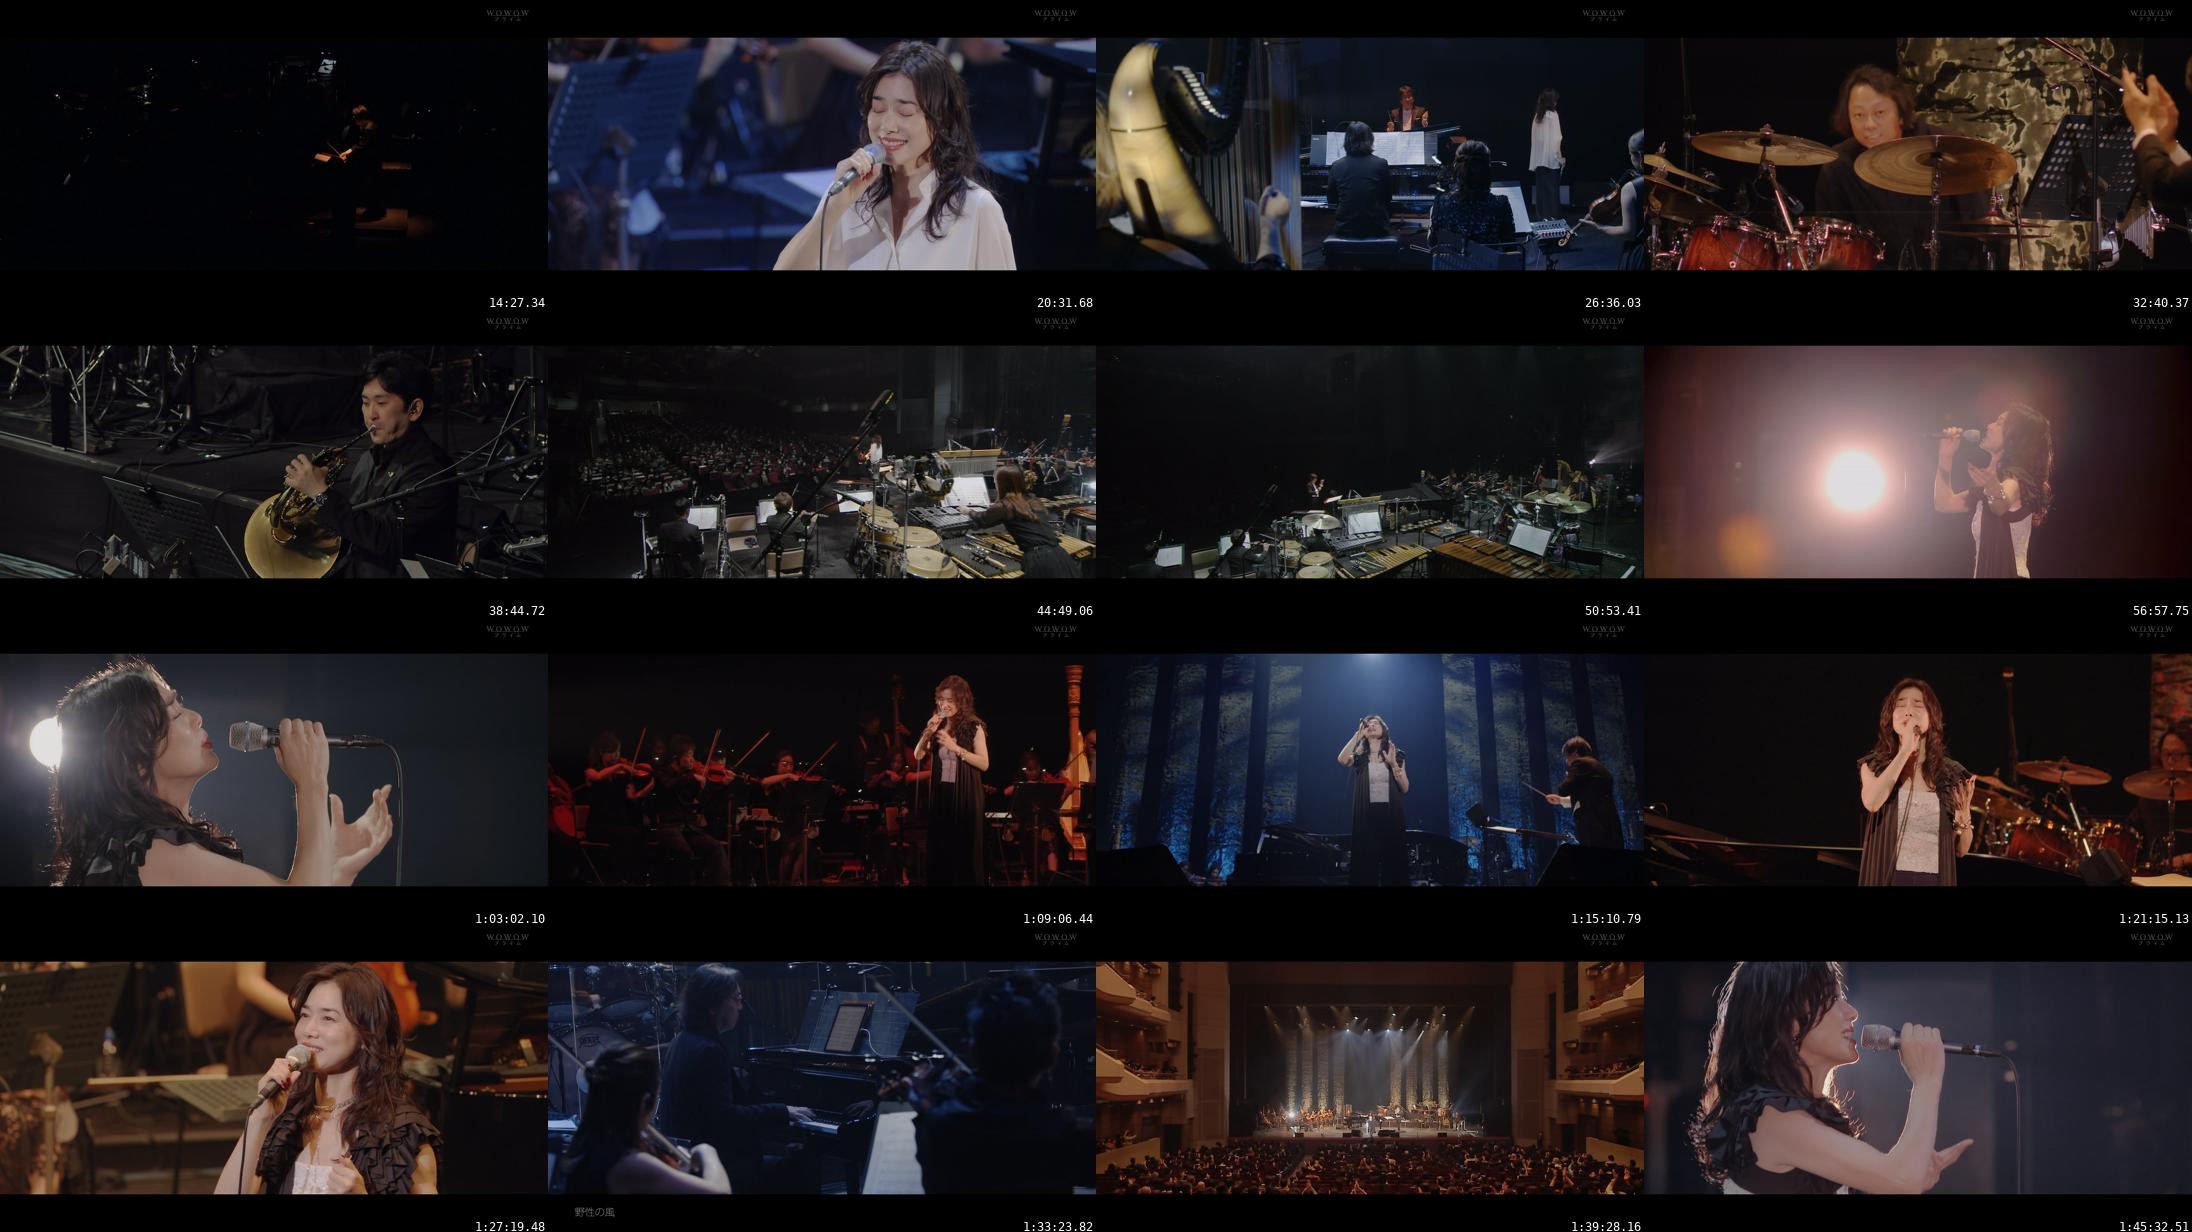 今井美樹 (Miki Imai) - billboard classics MIKI IMAI 35th Anniversary premium ensemble concert (WOWOW Prime 2021.02.23)